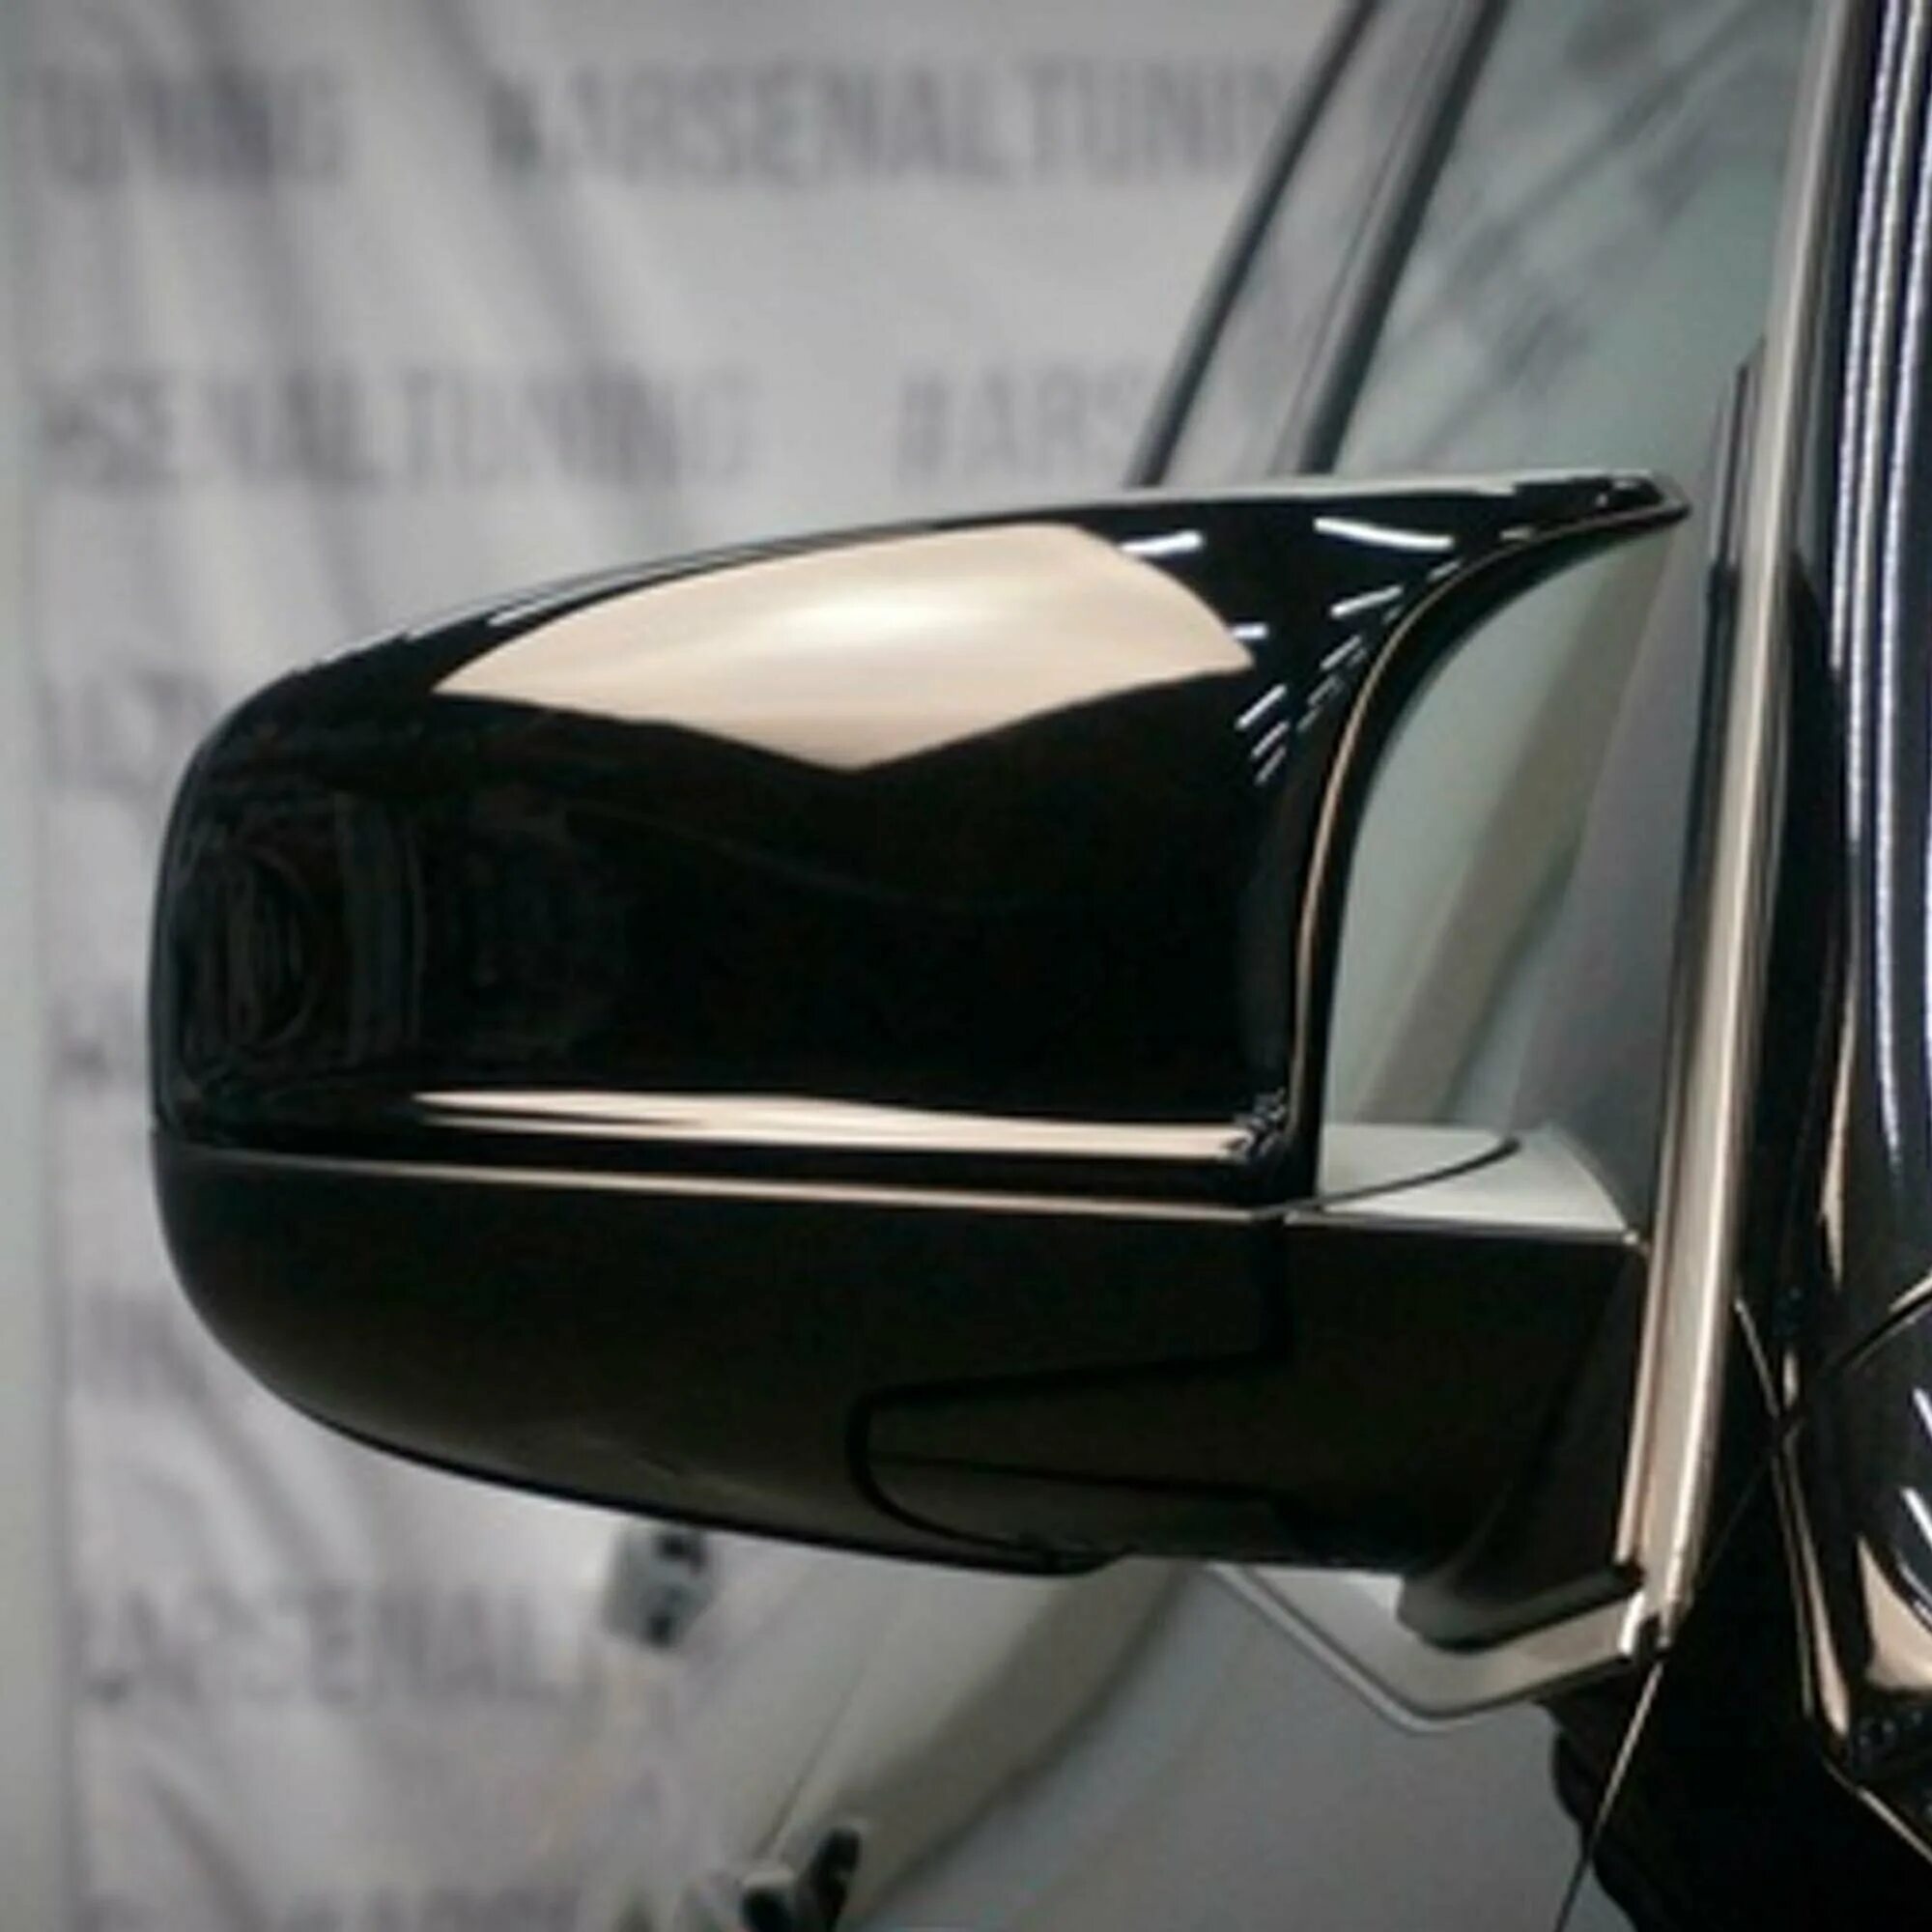 Зеркала х5 е70. Зеркало BMW x5 e70. Накладки на зеркала БМВ х5 е70 м стиль. Накладки на зеркала БМВ х5 е70. BMW e71 x6 накладки на зеркала.